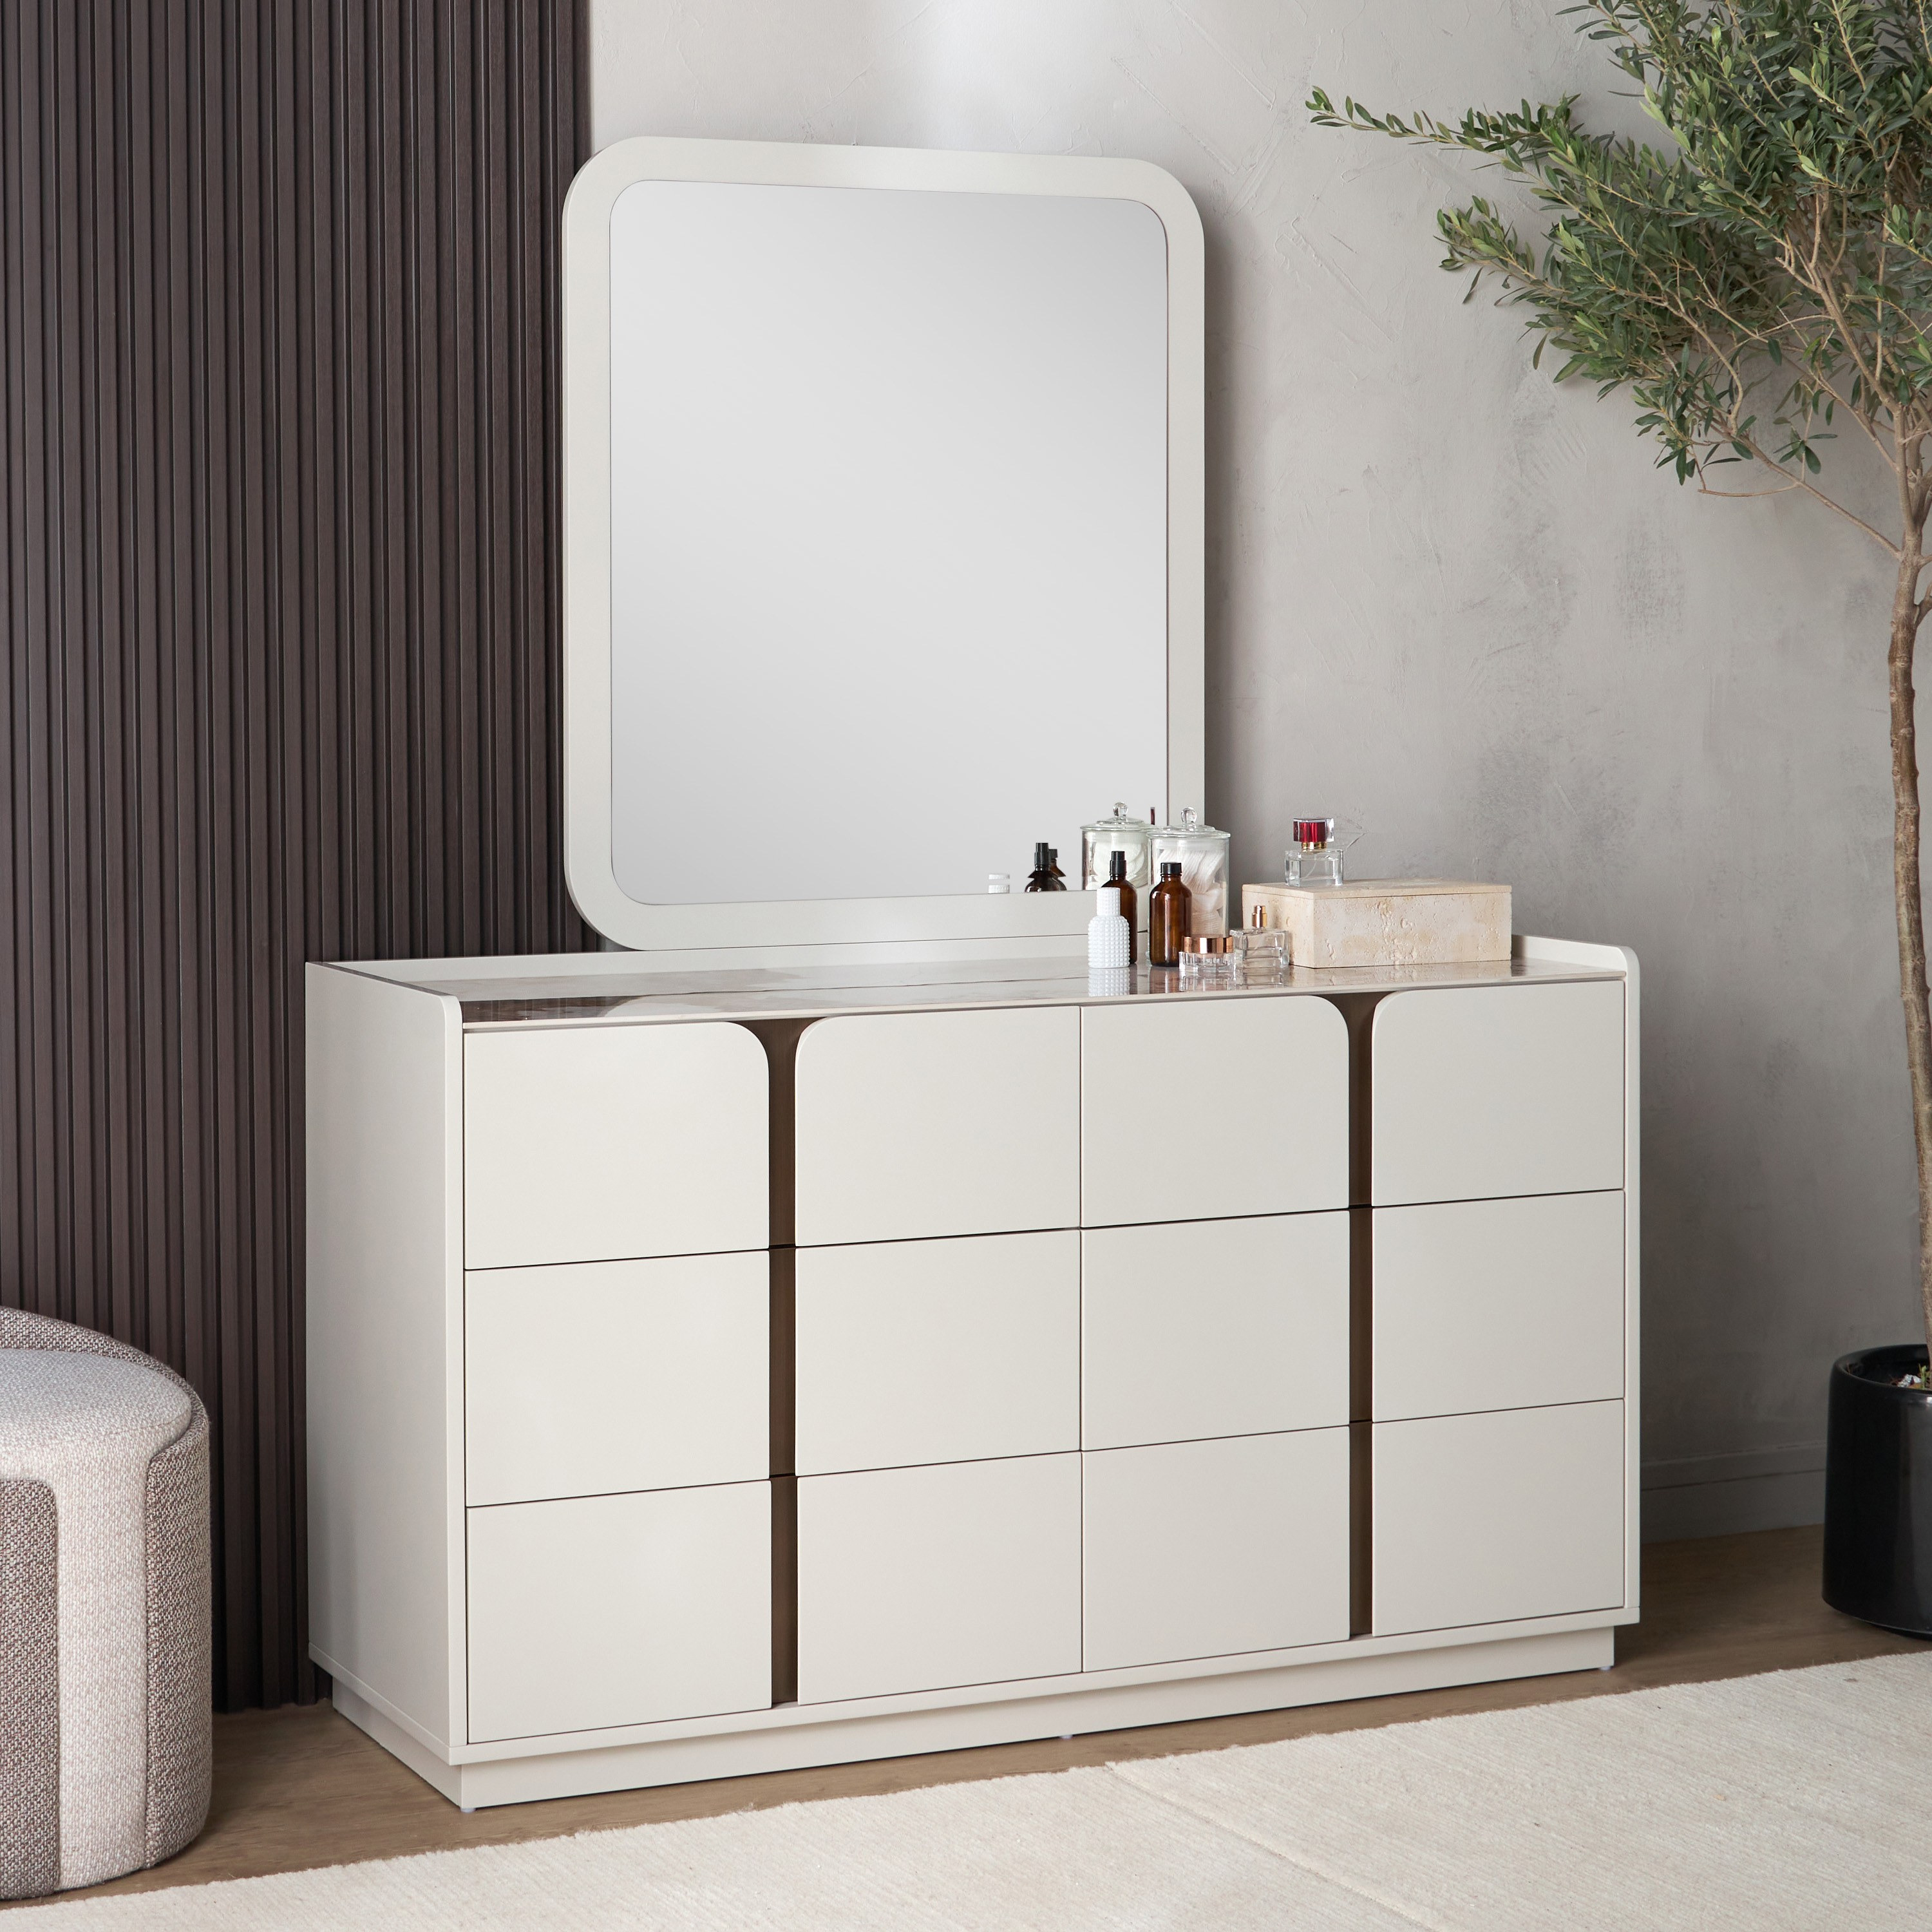 Home Centre Paris Dresser Mirror (Cream) : Amazon.in: Home & Kitchen